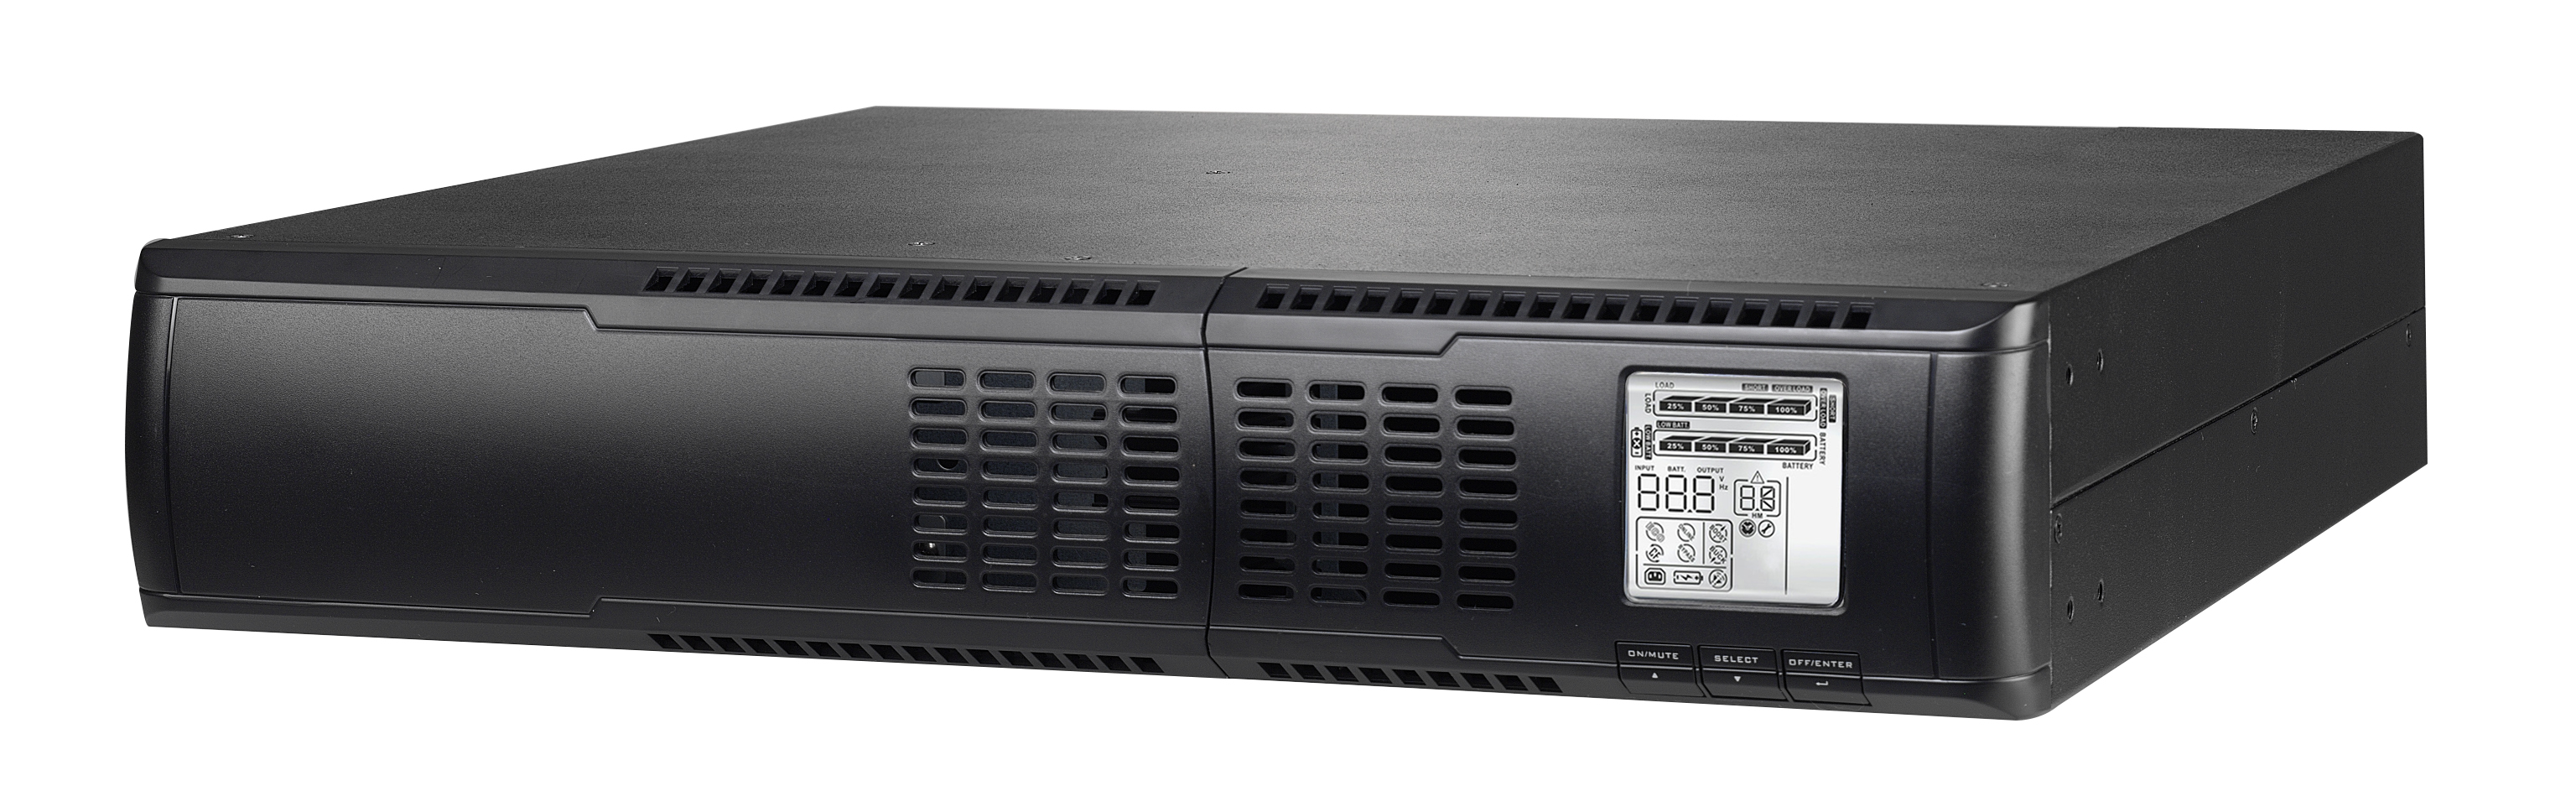 ИБП GIGALINK GL-UPS-LI02/4*9a, 2000 В·А, 1.8 кВт, IEC, розеток - 8, USB, черный